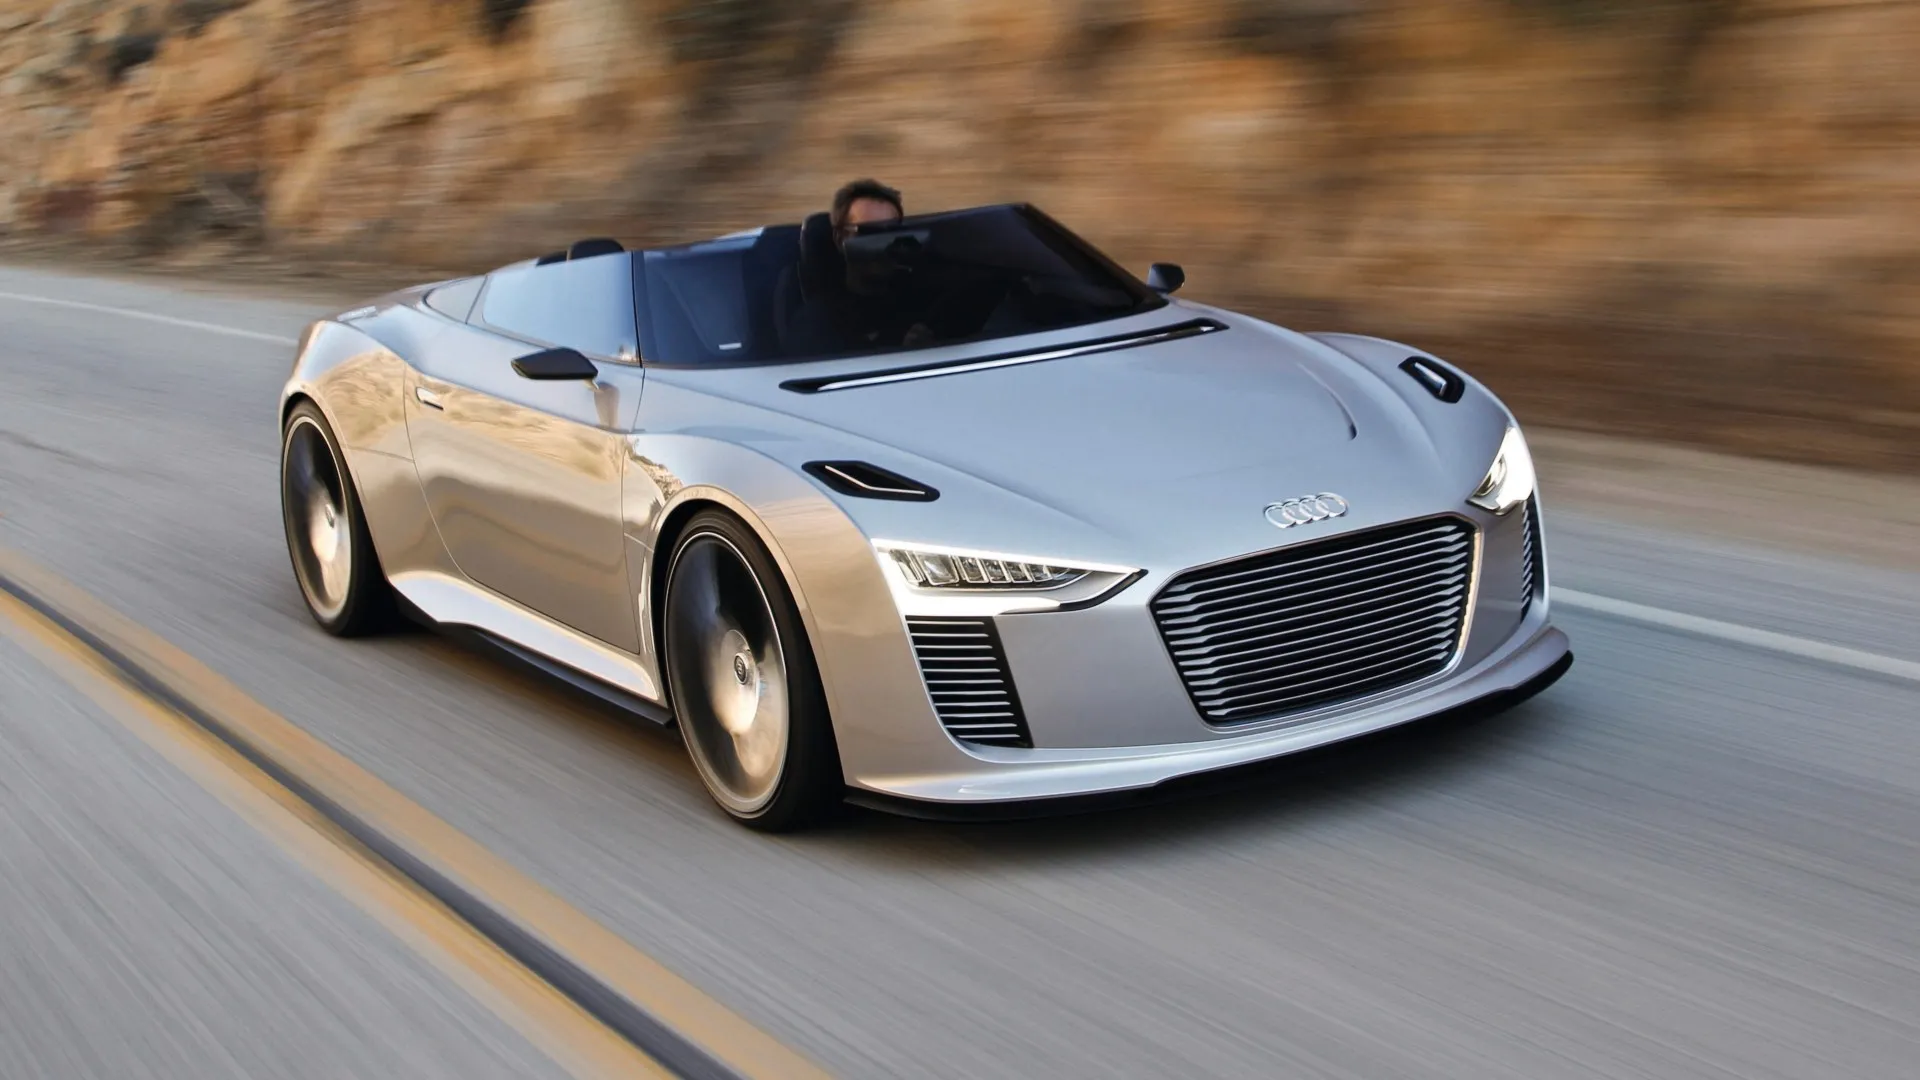 Hoy recordamos el Audi e-tron Spyder Concept